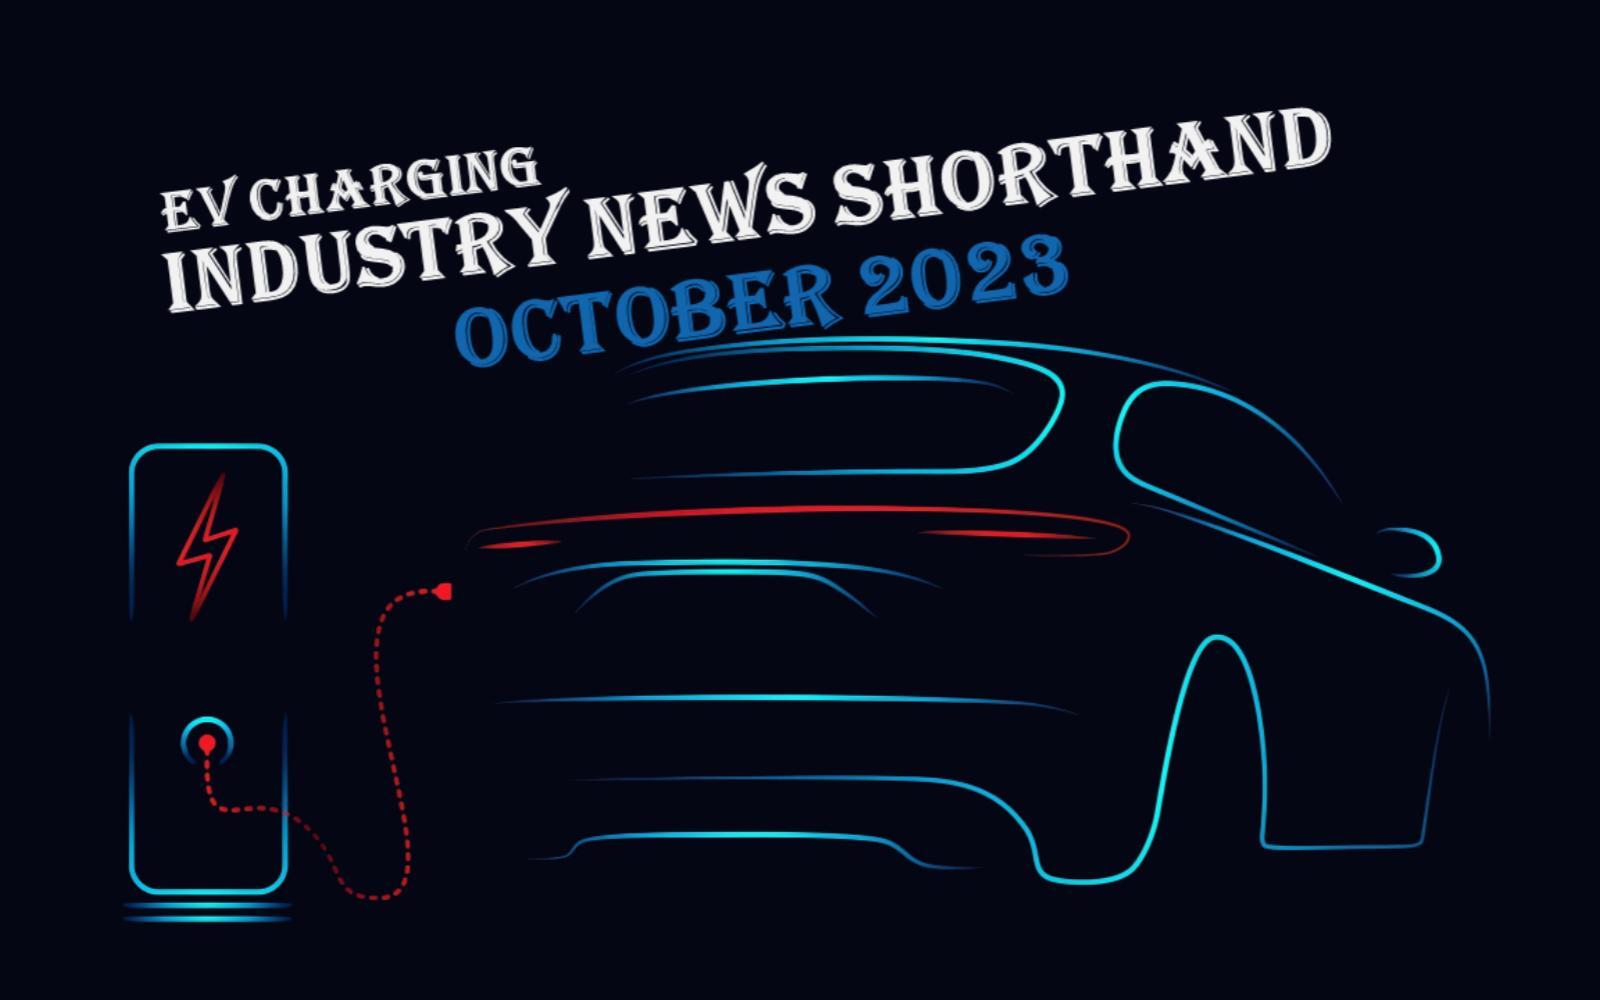 October 2023 EV charging industry news summary